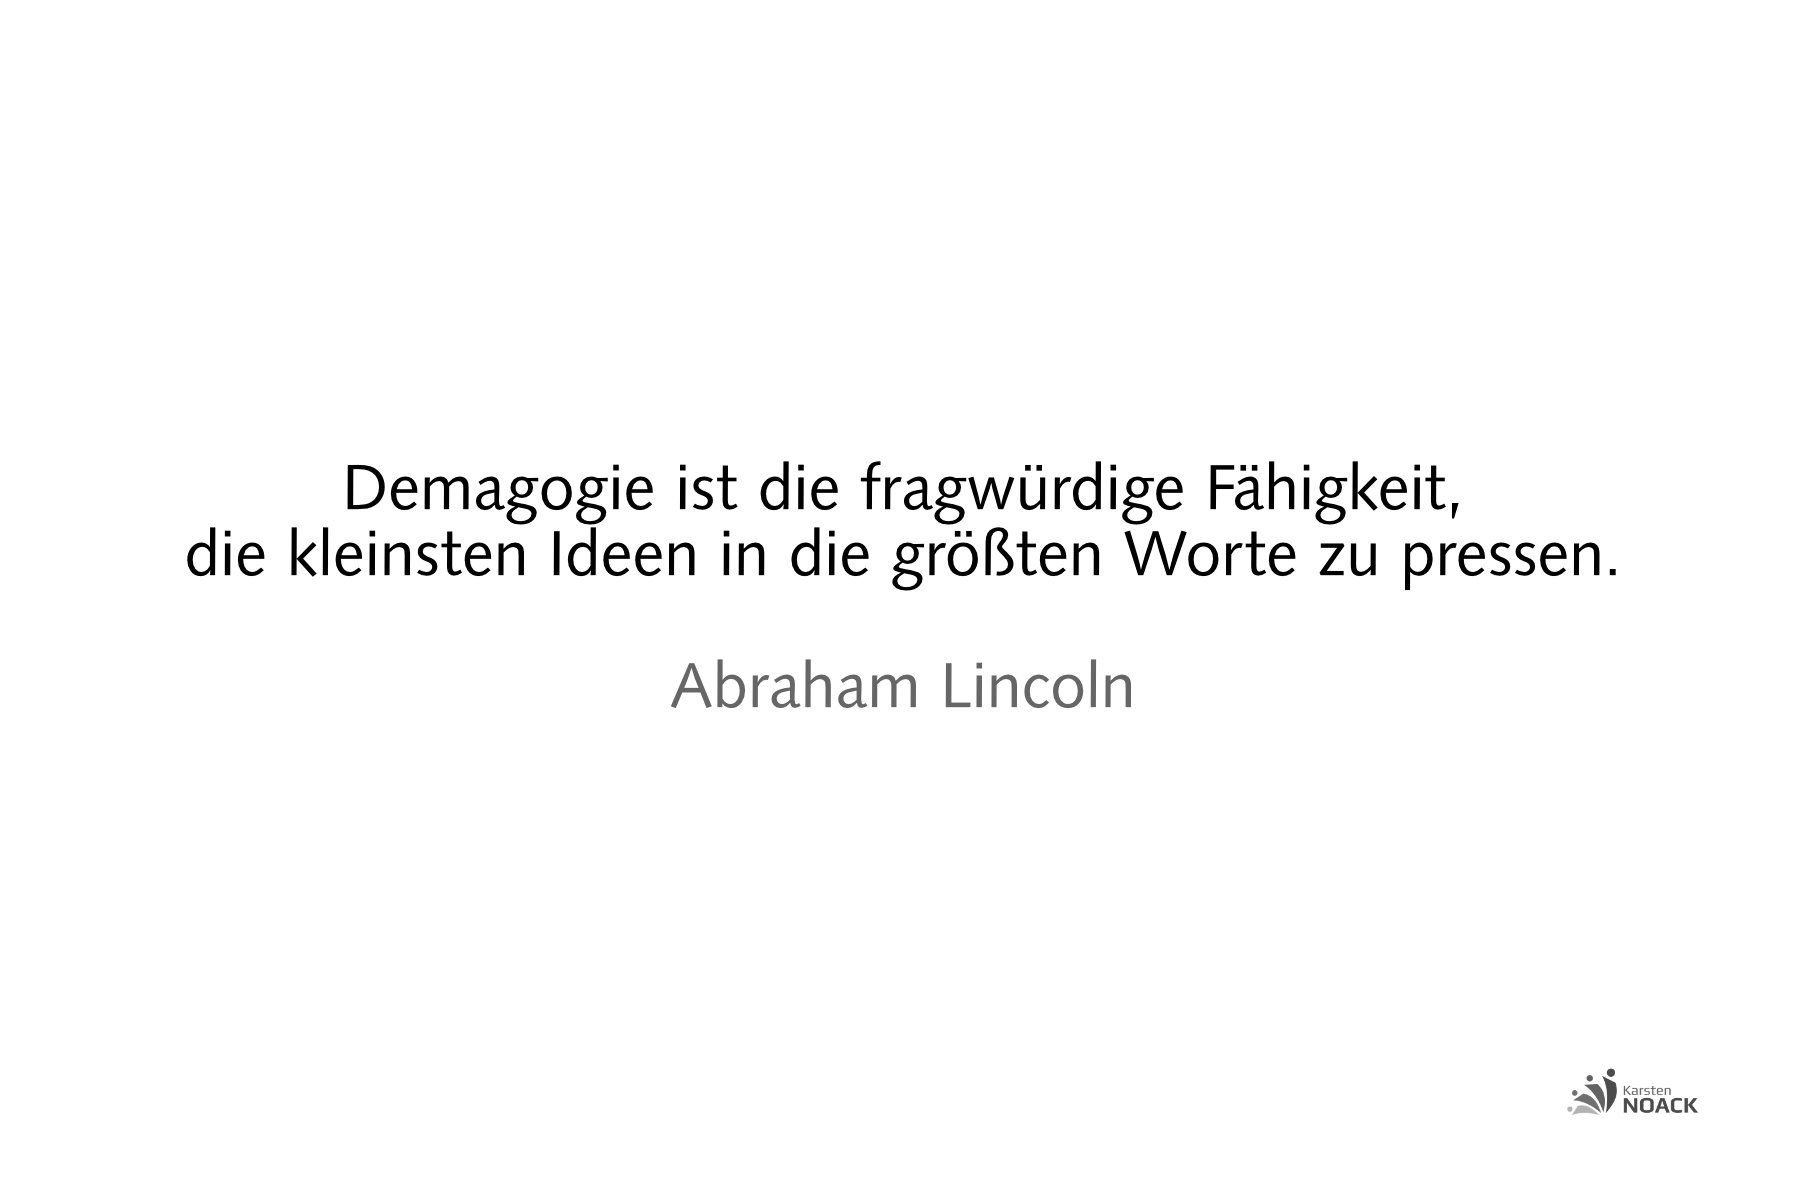 Demagogie ist die fragwürdige Fähigkeit, die kleinsten Ideen in die größte Worte zu pressen. Abraham Lincoln